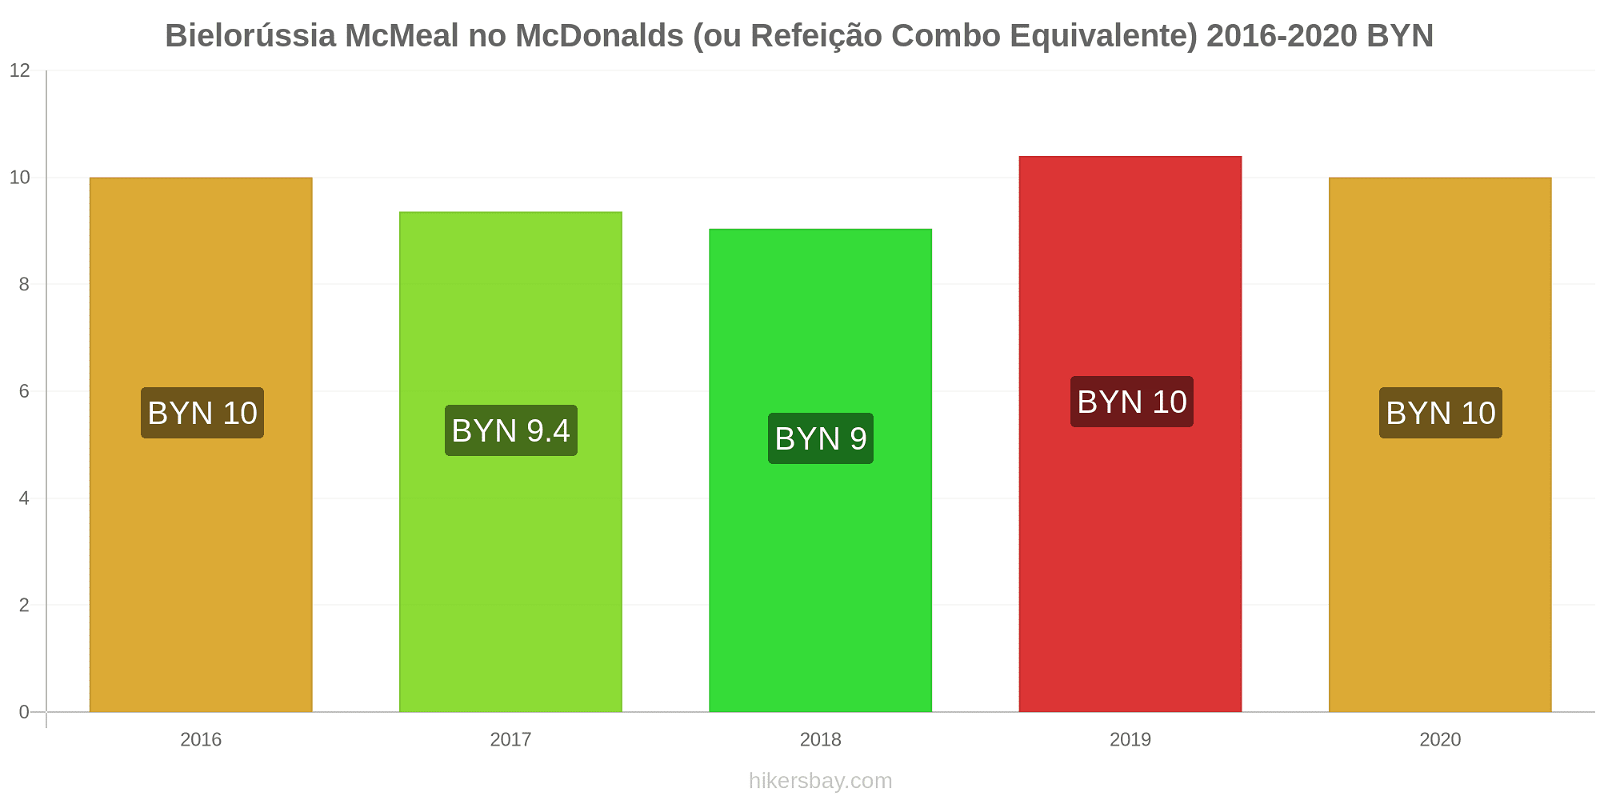 Bielorússia variação de preço McMeal no McDonald ' s (ou refeição Combo equivalente) hikersbay.com